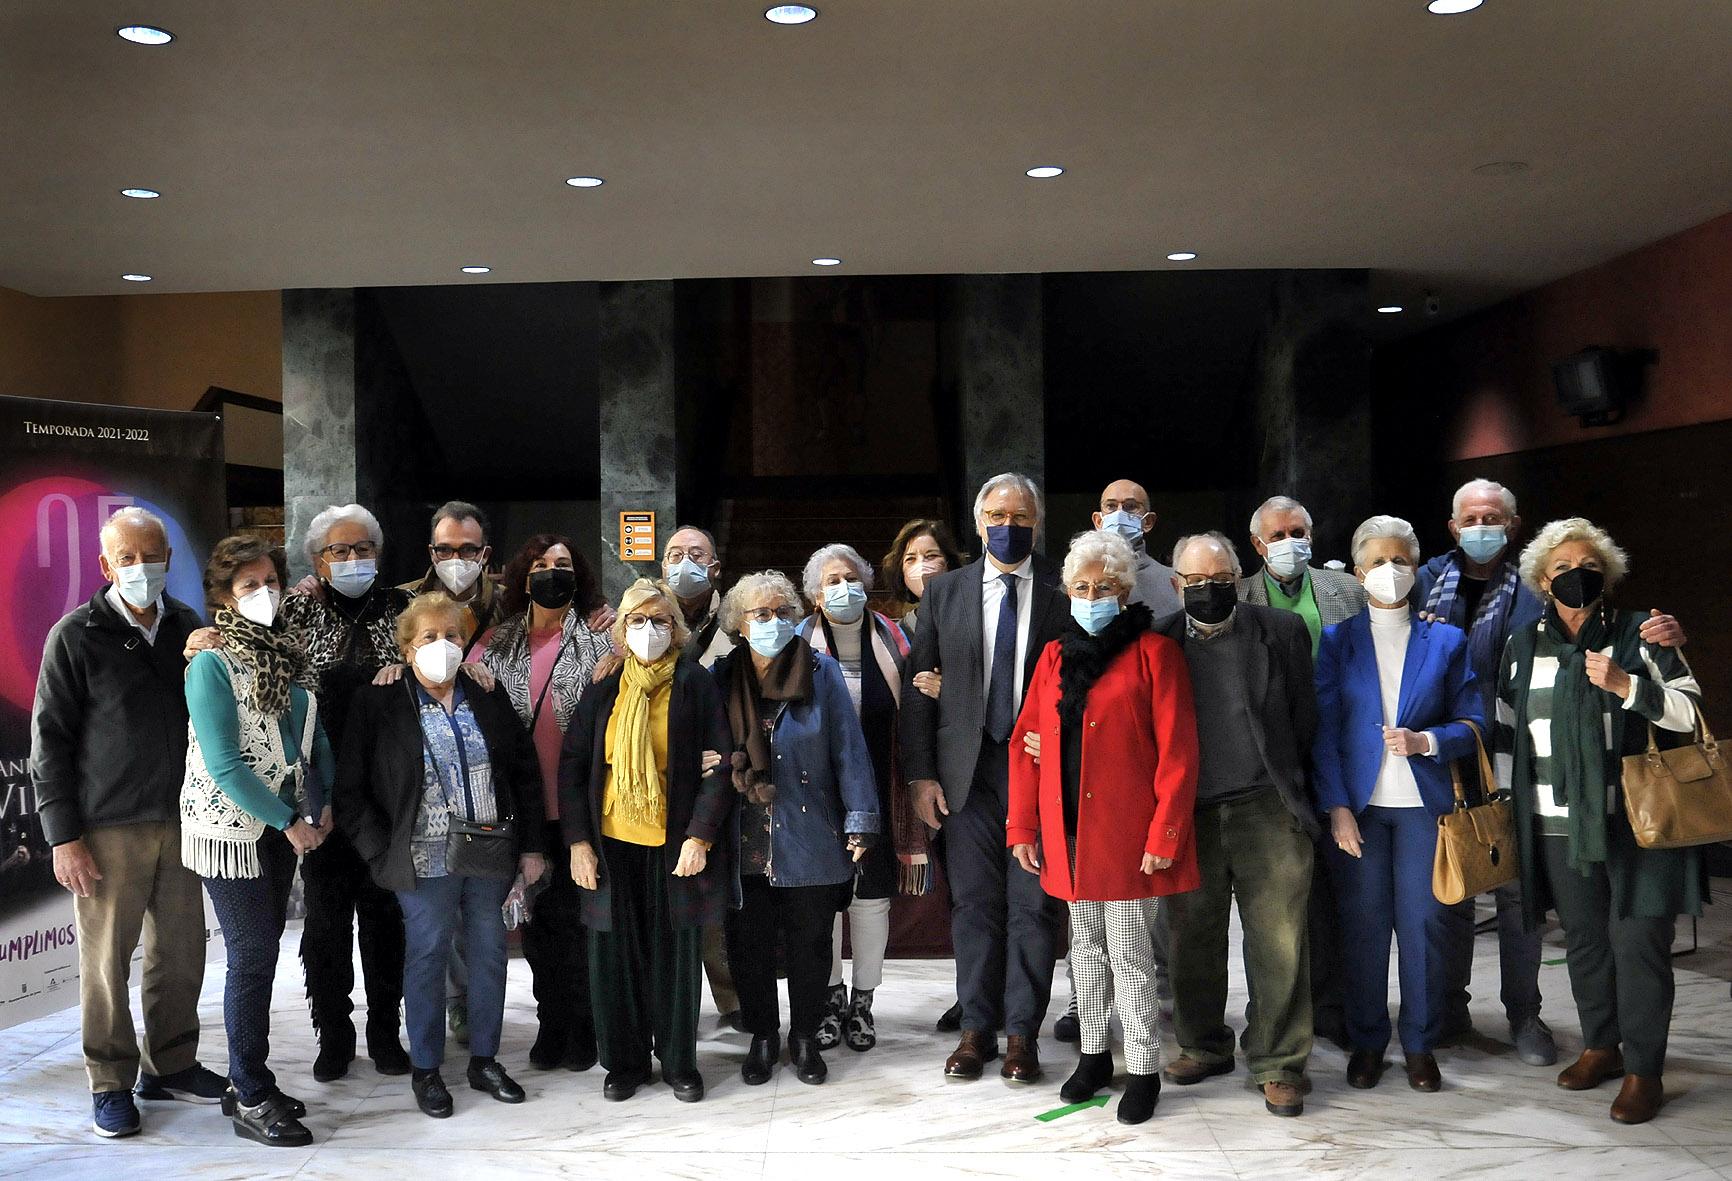 Mayores de 65 años trasladan al Villamarta su experiencia vital durante la pandemia